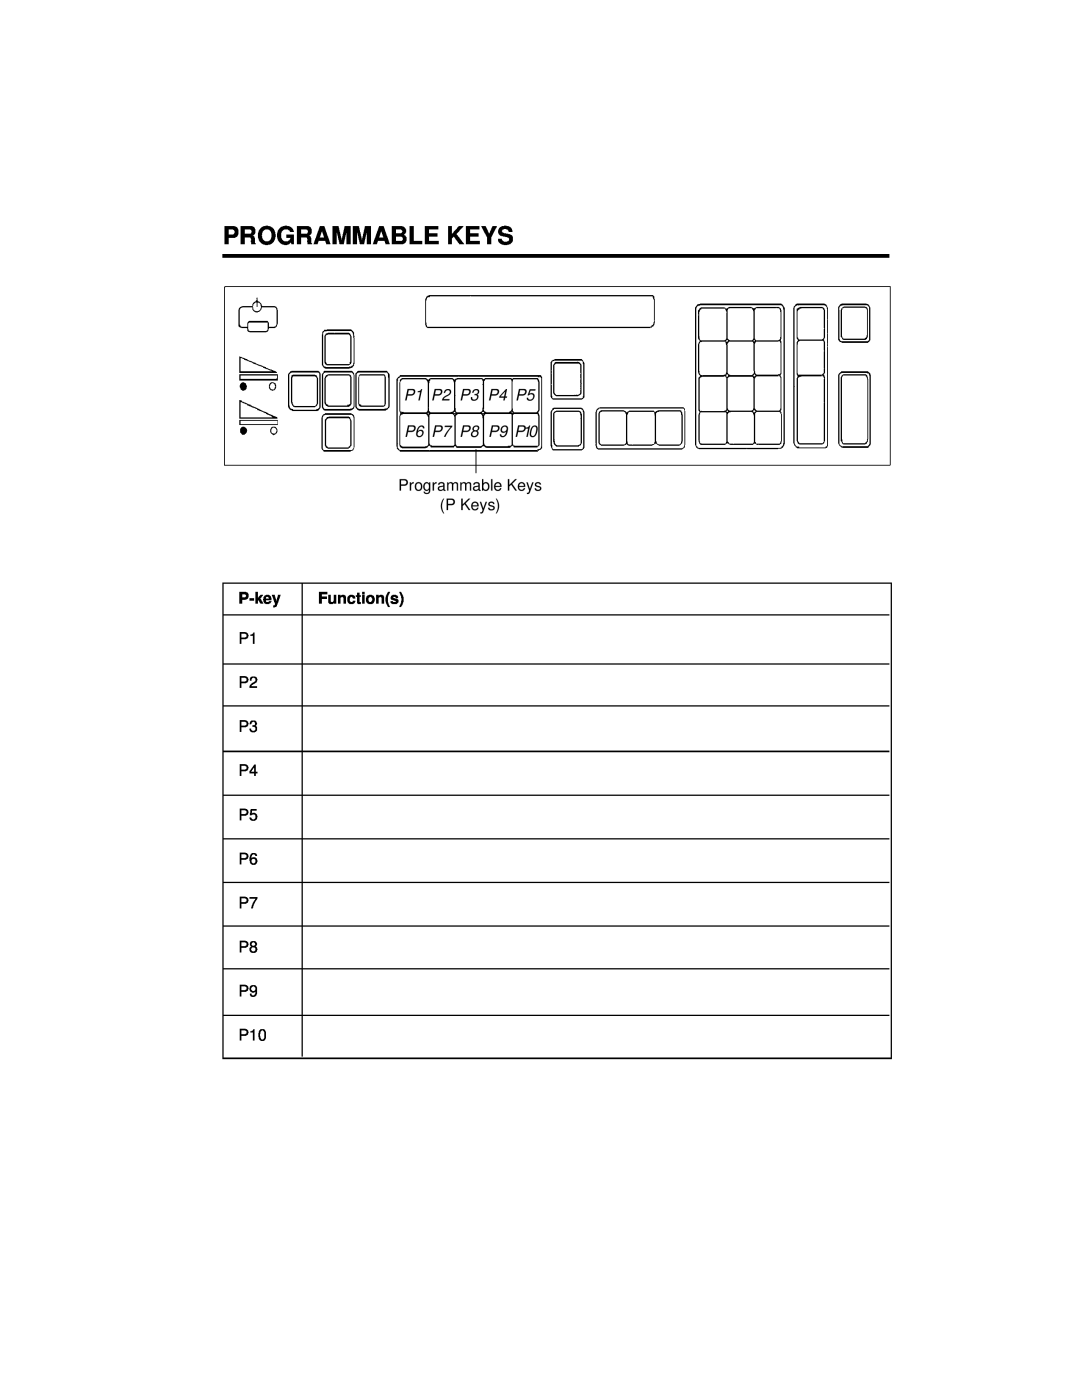 Kodak A-61003 manual Programmable Keys, P1 P2 P3 P4 P5 P6 P7 P8 P9 P10, P-key, Functions 